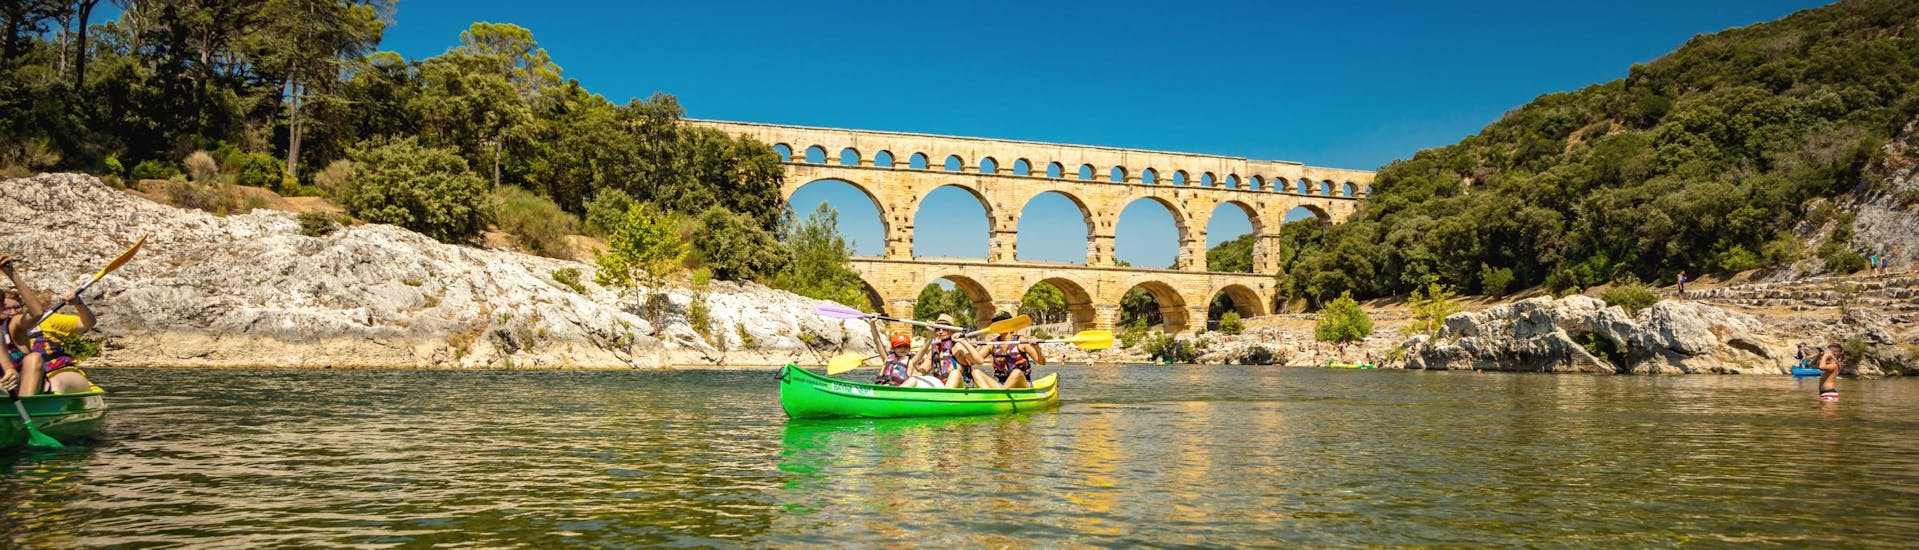 Dank Kayak Vert verbringt eine Familie einen schönen Tag beim Paddeln auf dem Gardon mit dem Pont du Gard, einem der beliebtesten Ziele für Kanutouren in Frankreich, im Hintergrund.